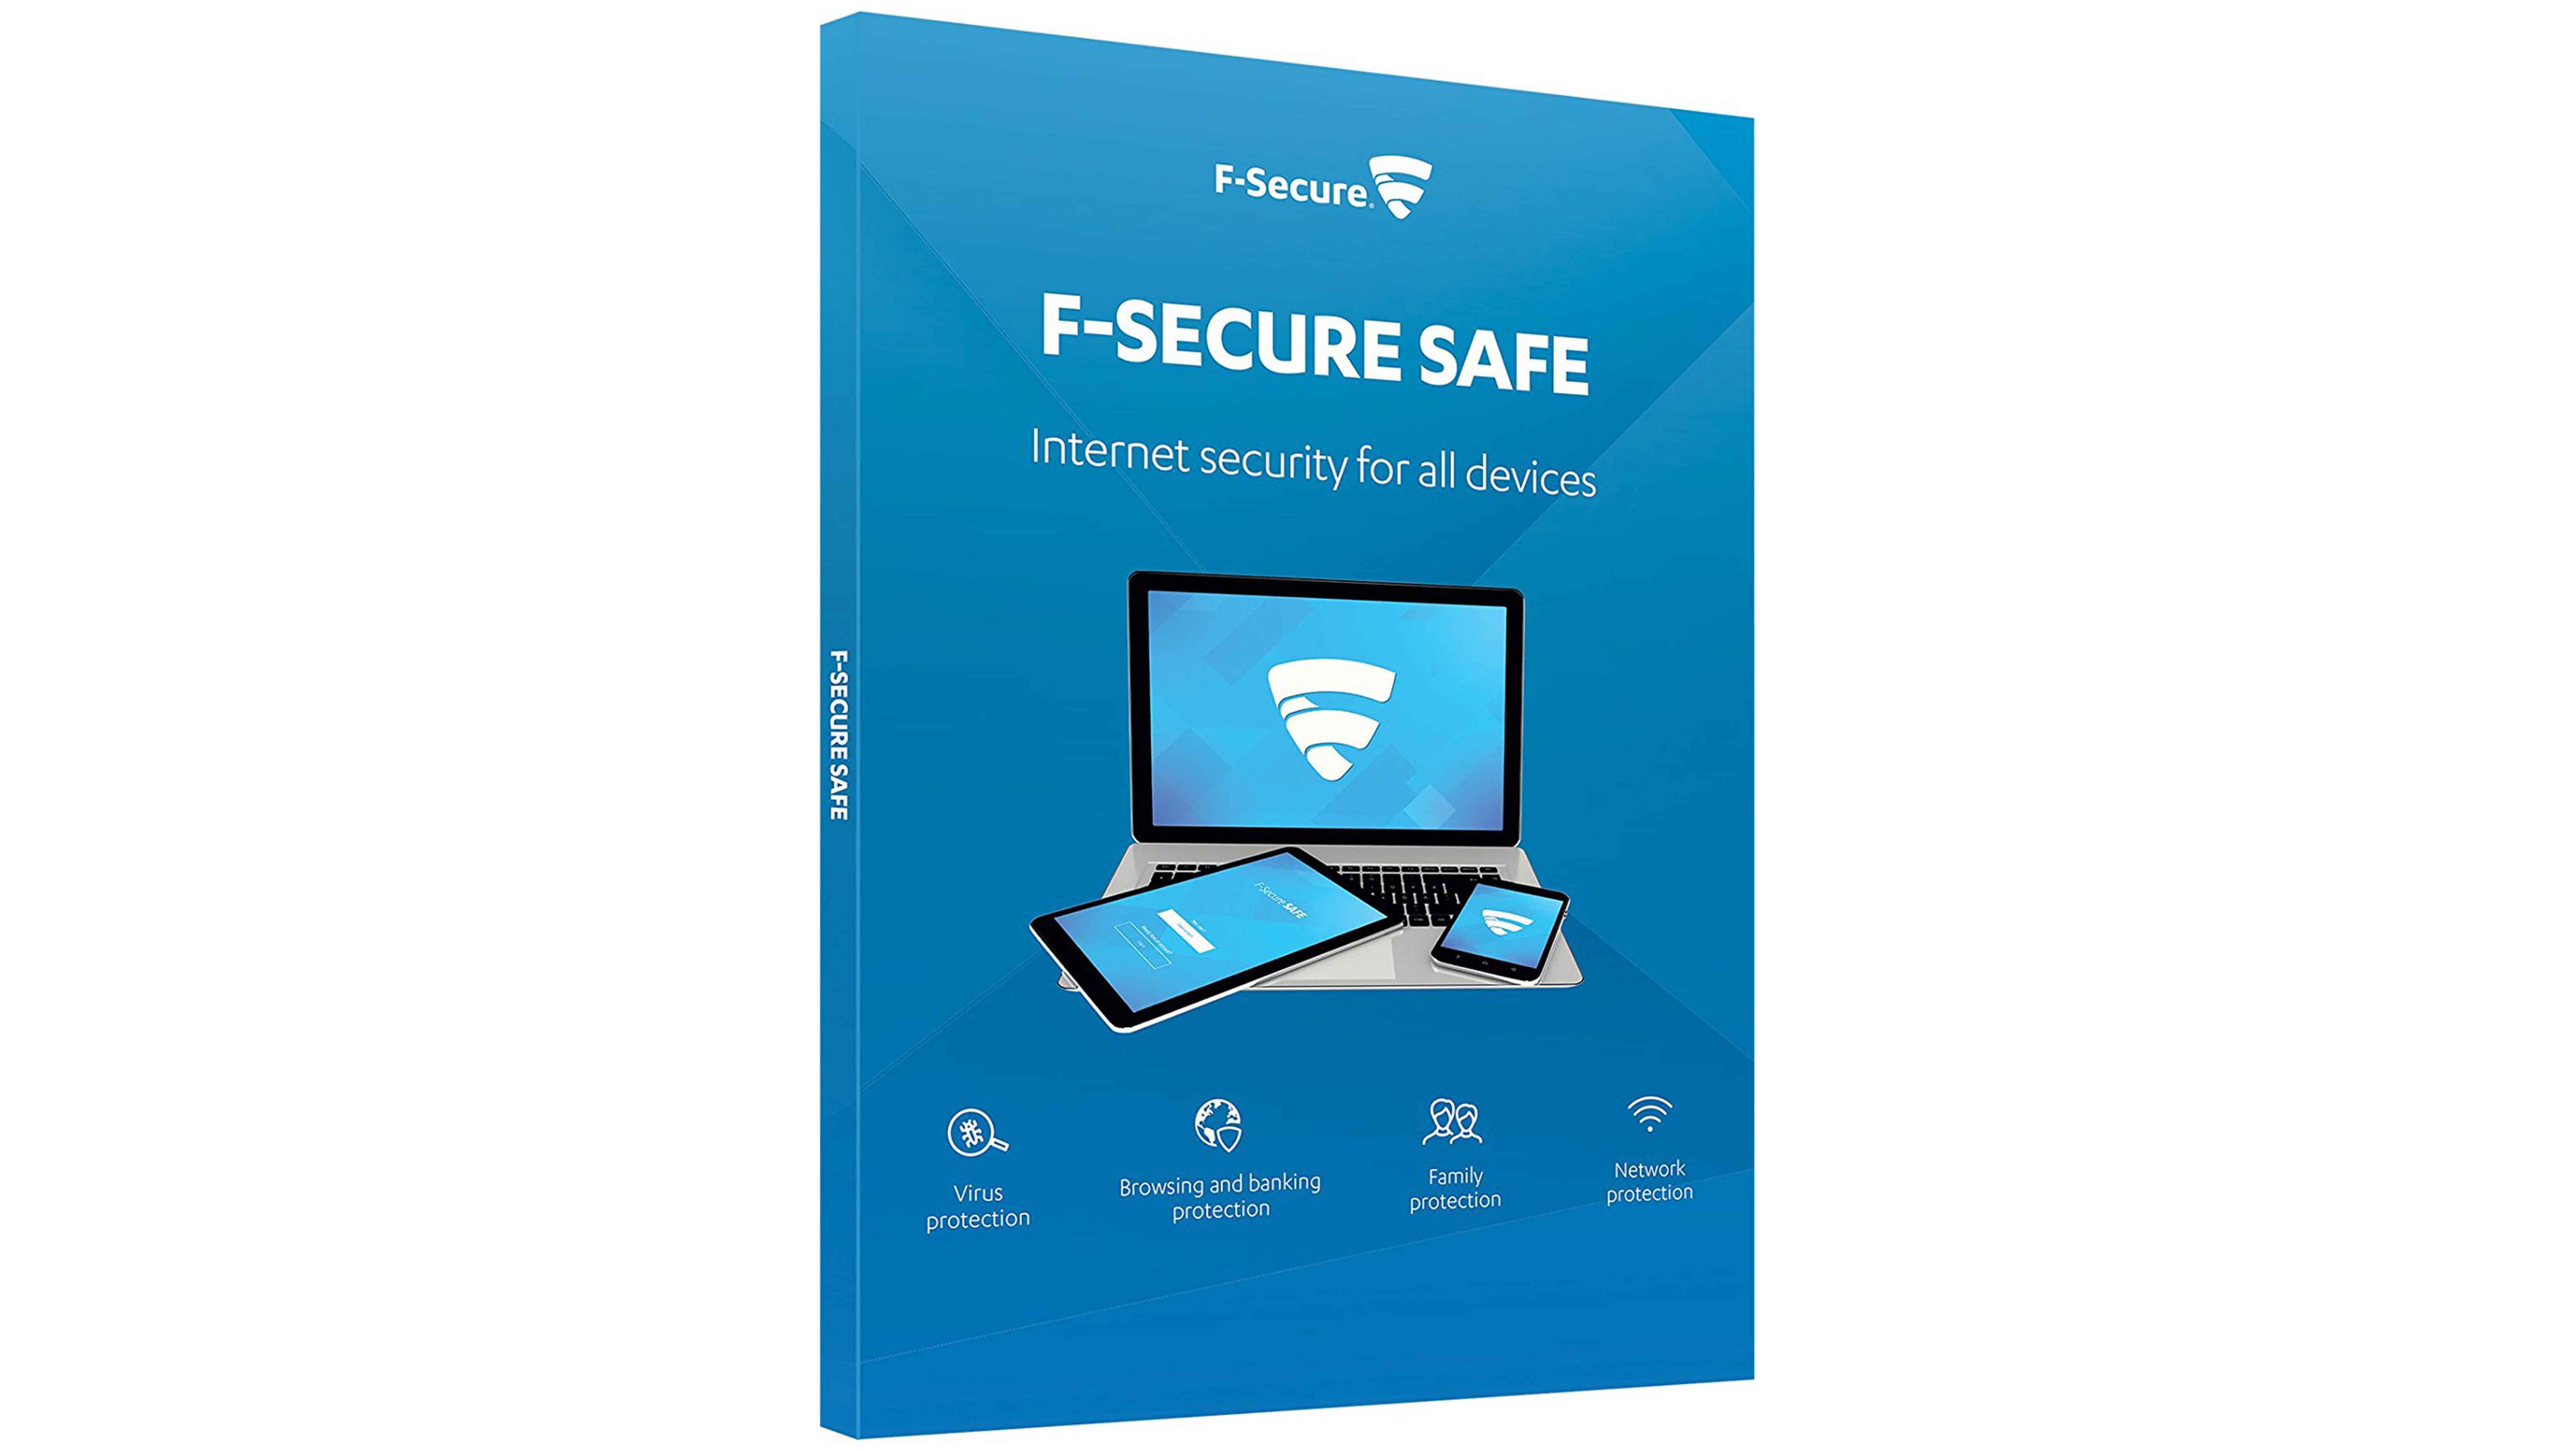 download f-secure antivirus for mac